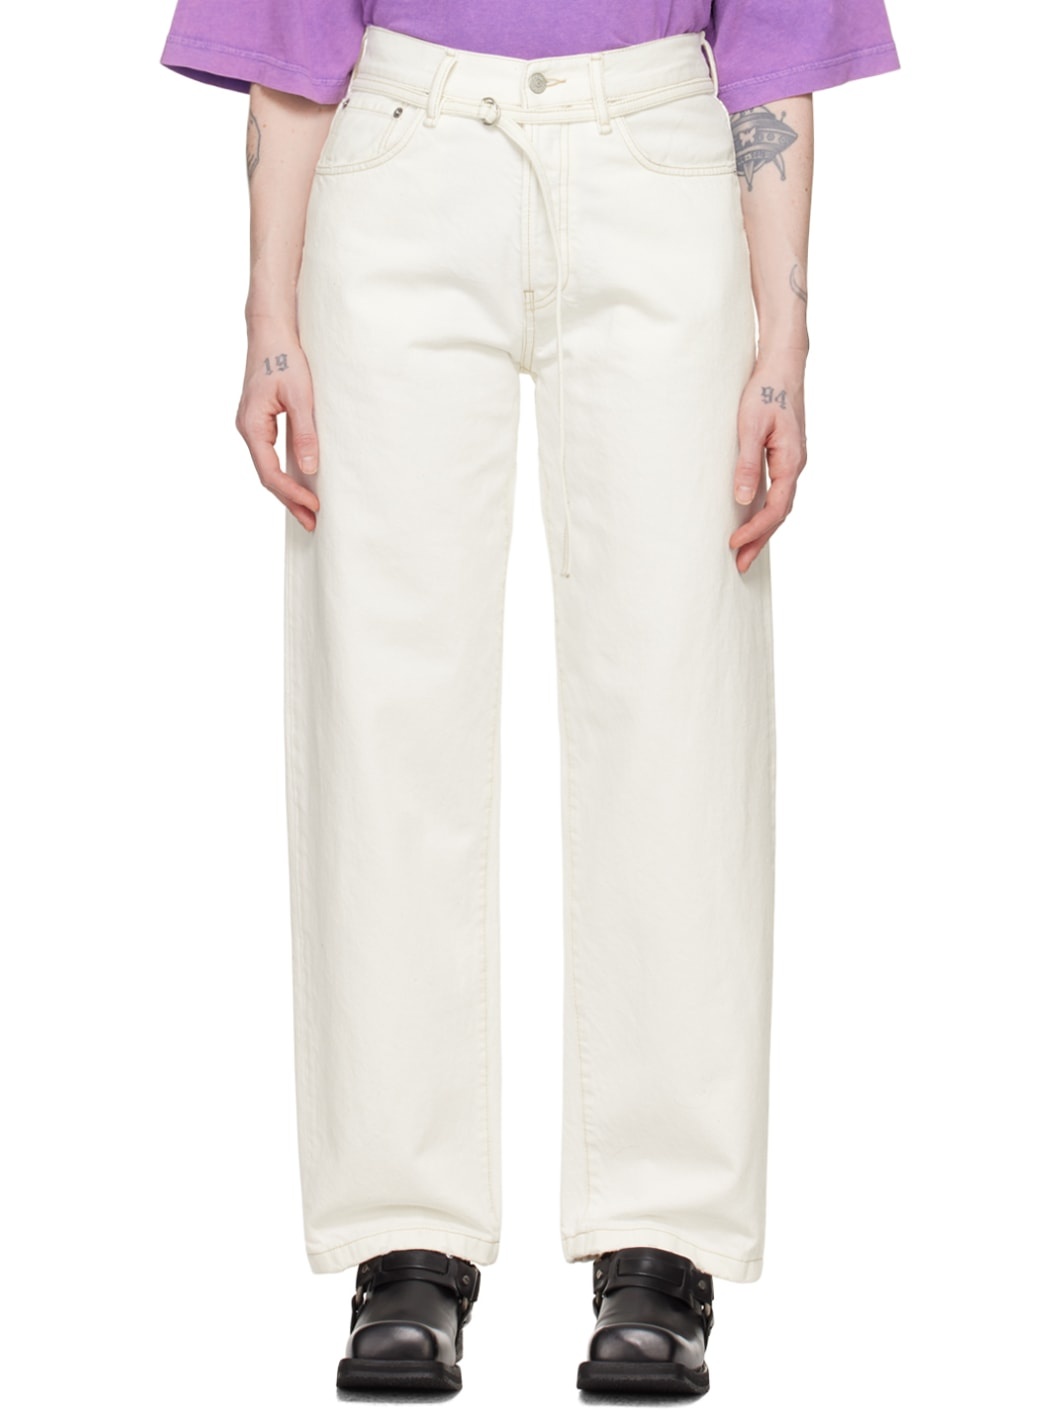 White 1991 Toj Jeans - 1